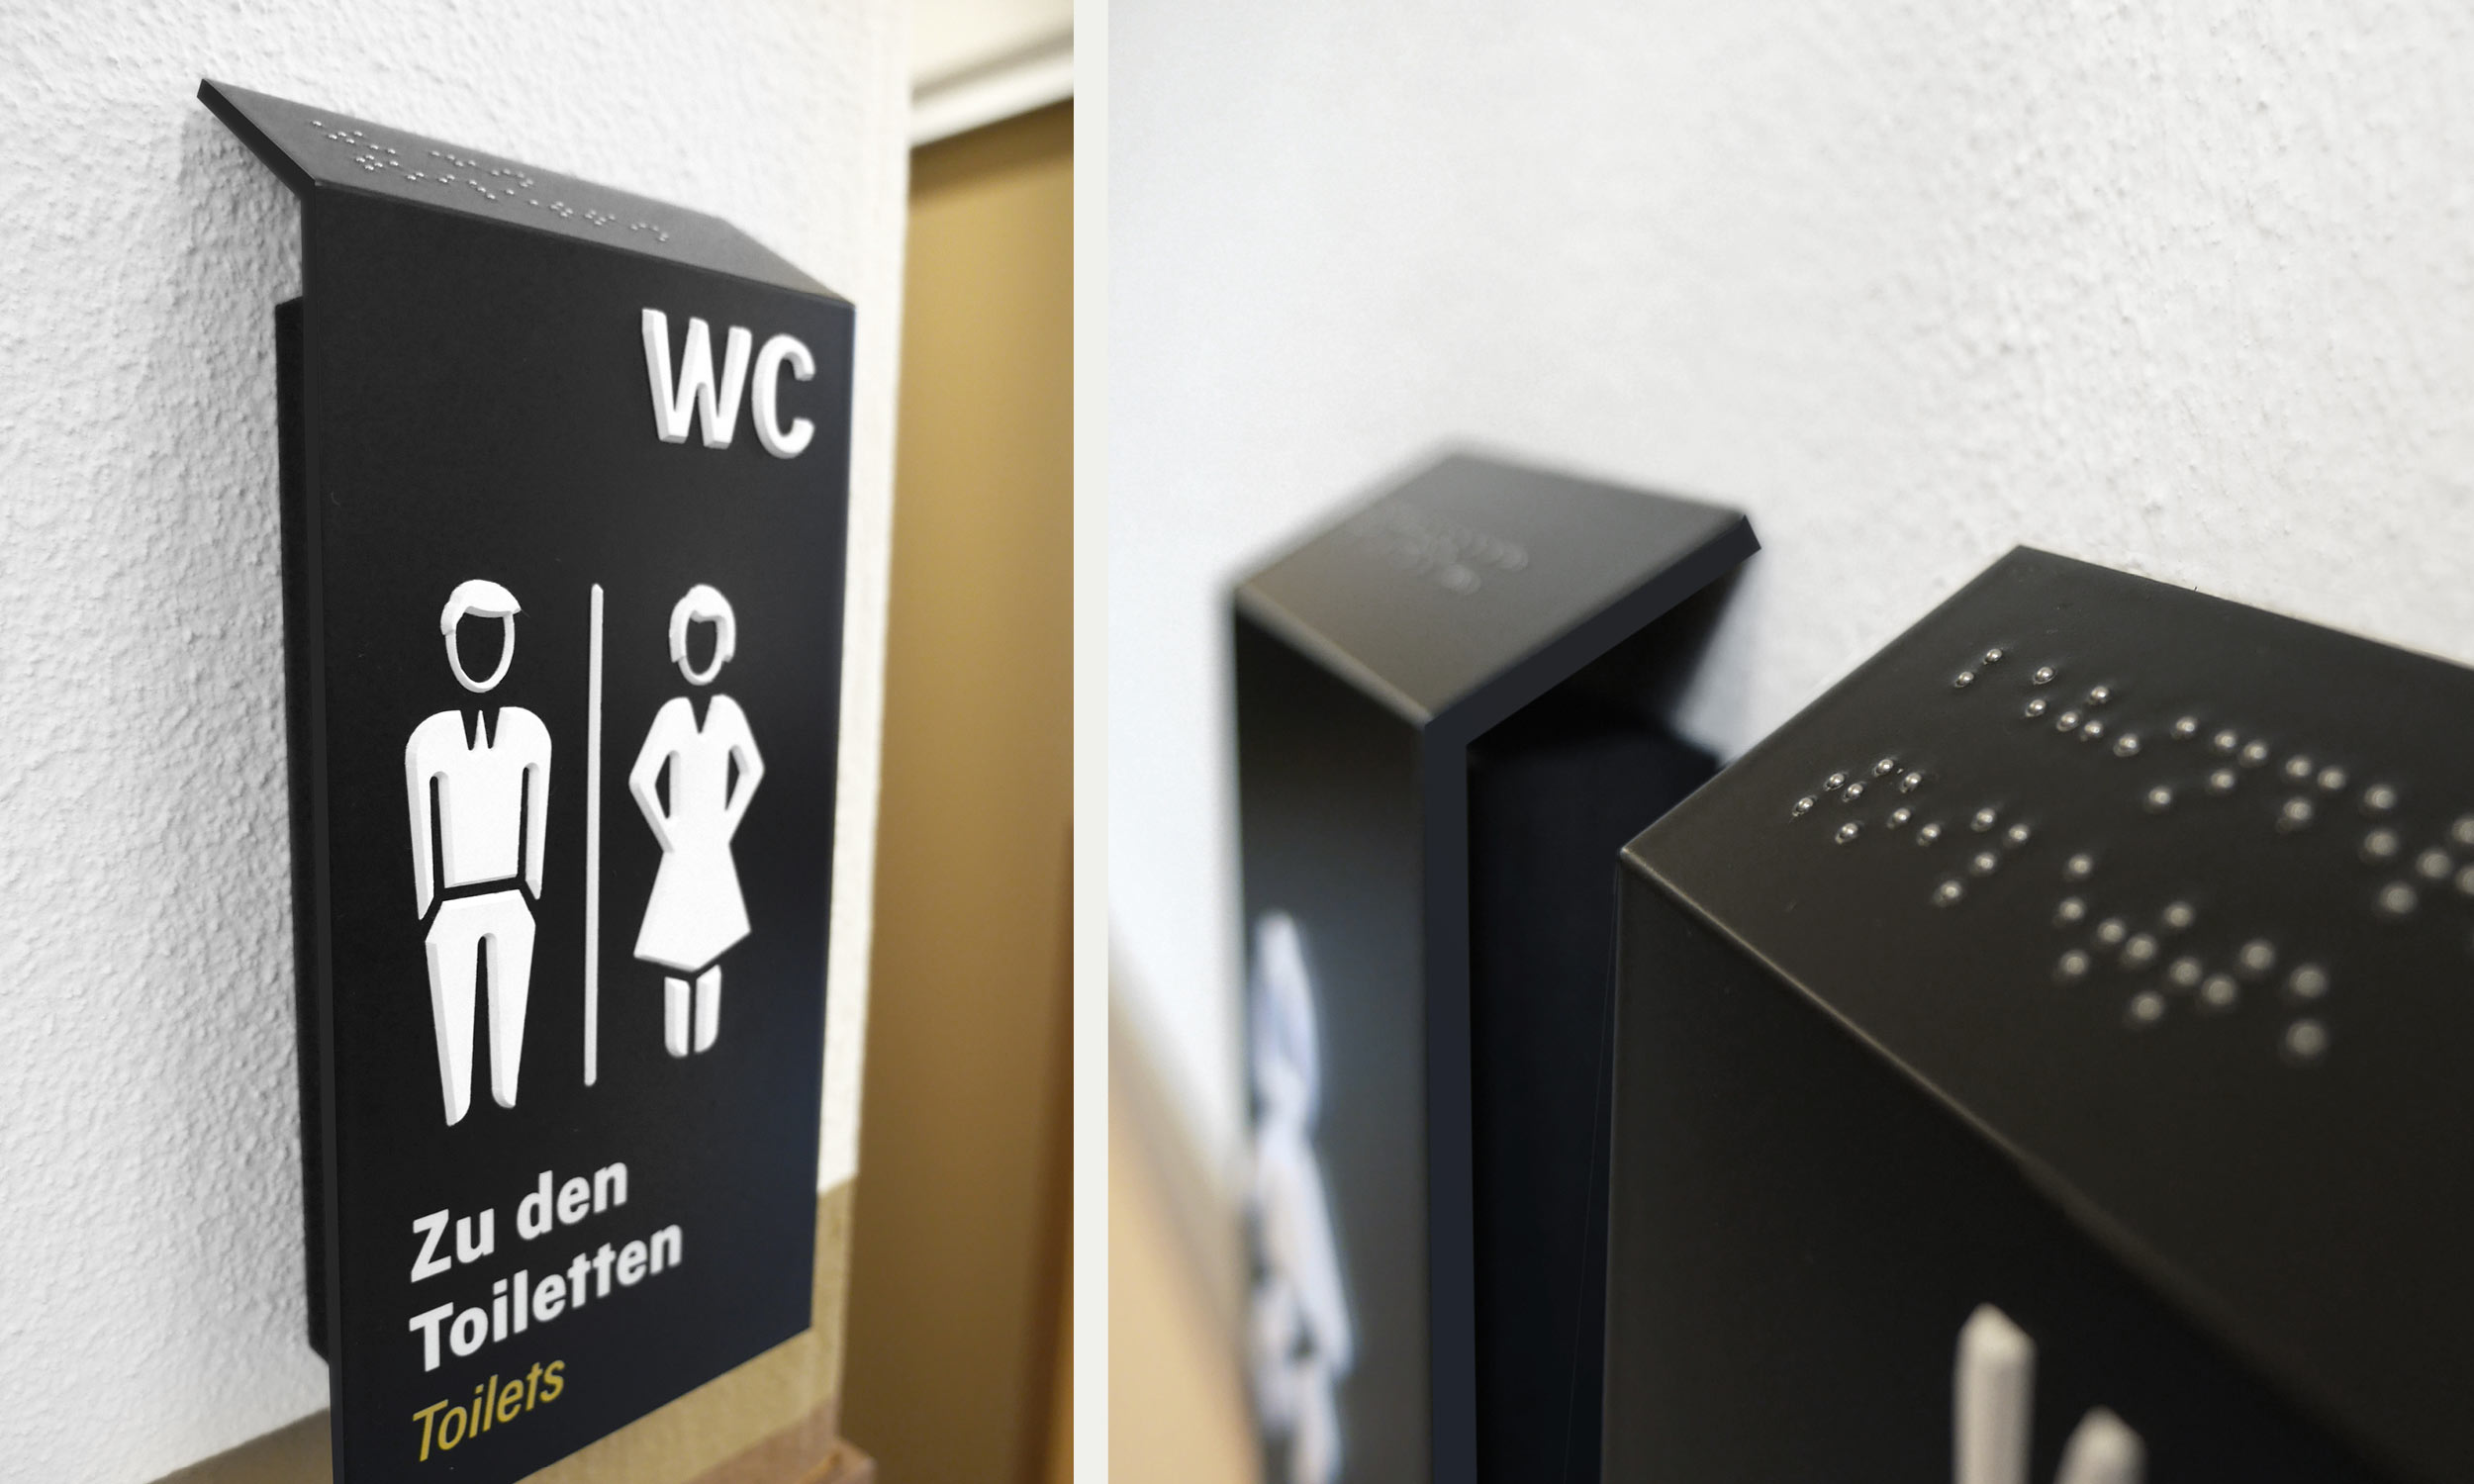 Fotos der Toilettenbeschilderung mit taktilen Piktogrammen und separater Kennzeichnung in Braille